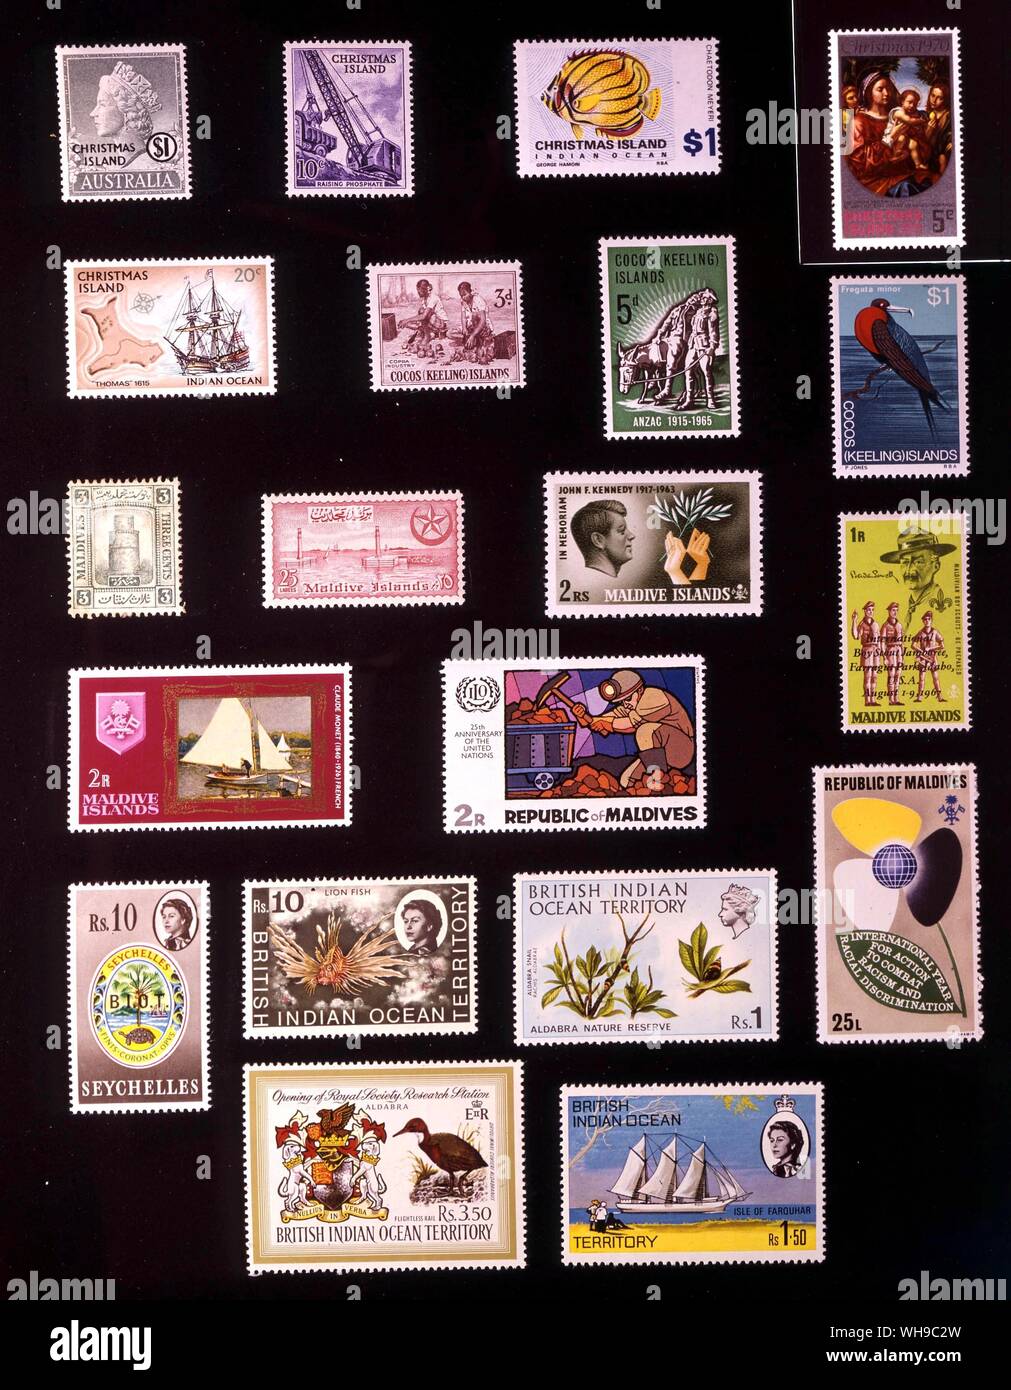 Asie - îles de l'OCÉAN INDIEN : (de gauche à droite) 1. L'île de Noël, 1 dollar, 1958, 2. L'île de Noël, 10 cents, 1963, 3. L'île de Noël, 1 dollar, 1968, 4. L'île de Noël, 5 cents, 1970, 5. L'île de Noël, 20 cents, 6. Îles Cocos, 3 pence, 1963, 7. Îles Cocos, 5 pence, 1965, 8. Îles Cocos, 1 dollar, 1979, 9. Maldives, 3 centimes, 1909, 10. Maldives, 25 larees, 1956, 11. Maldives, 2 roupies, 1965, 12. Maldives, 1 roupie, 1968, 13. Maldives, 2 roupies, 1968, 14. Maldives, 2 roupies, 1970, 15. Maldives, 25, 1971, 16 larees. British Indian Banque D'Images